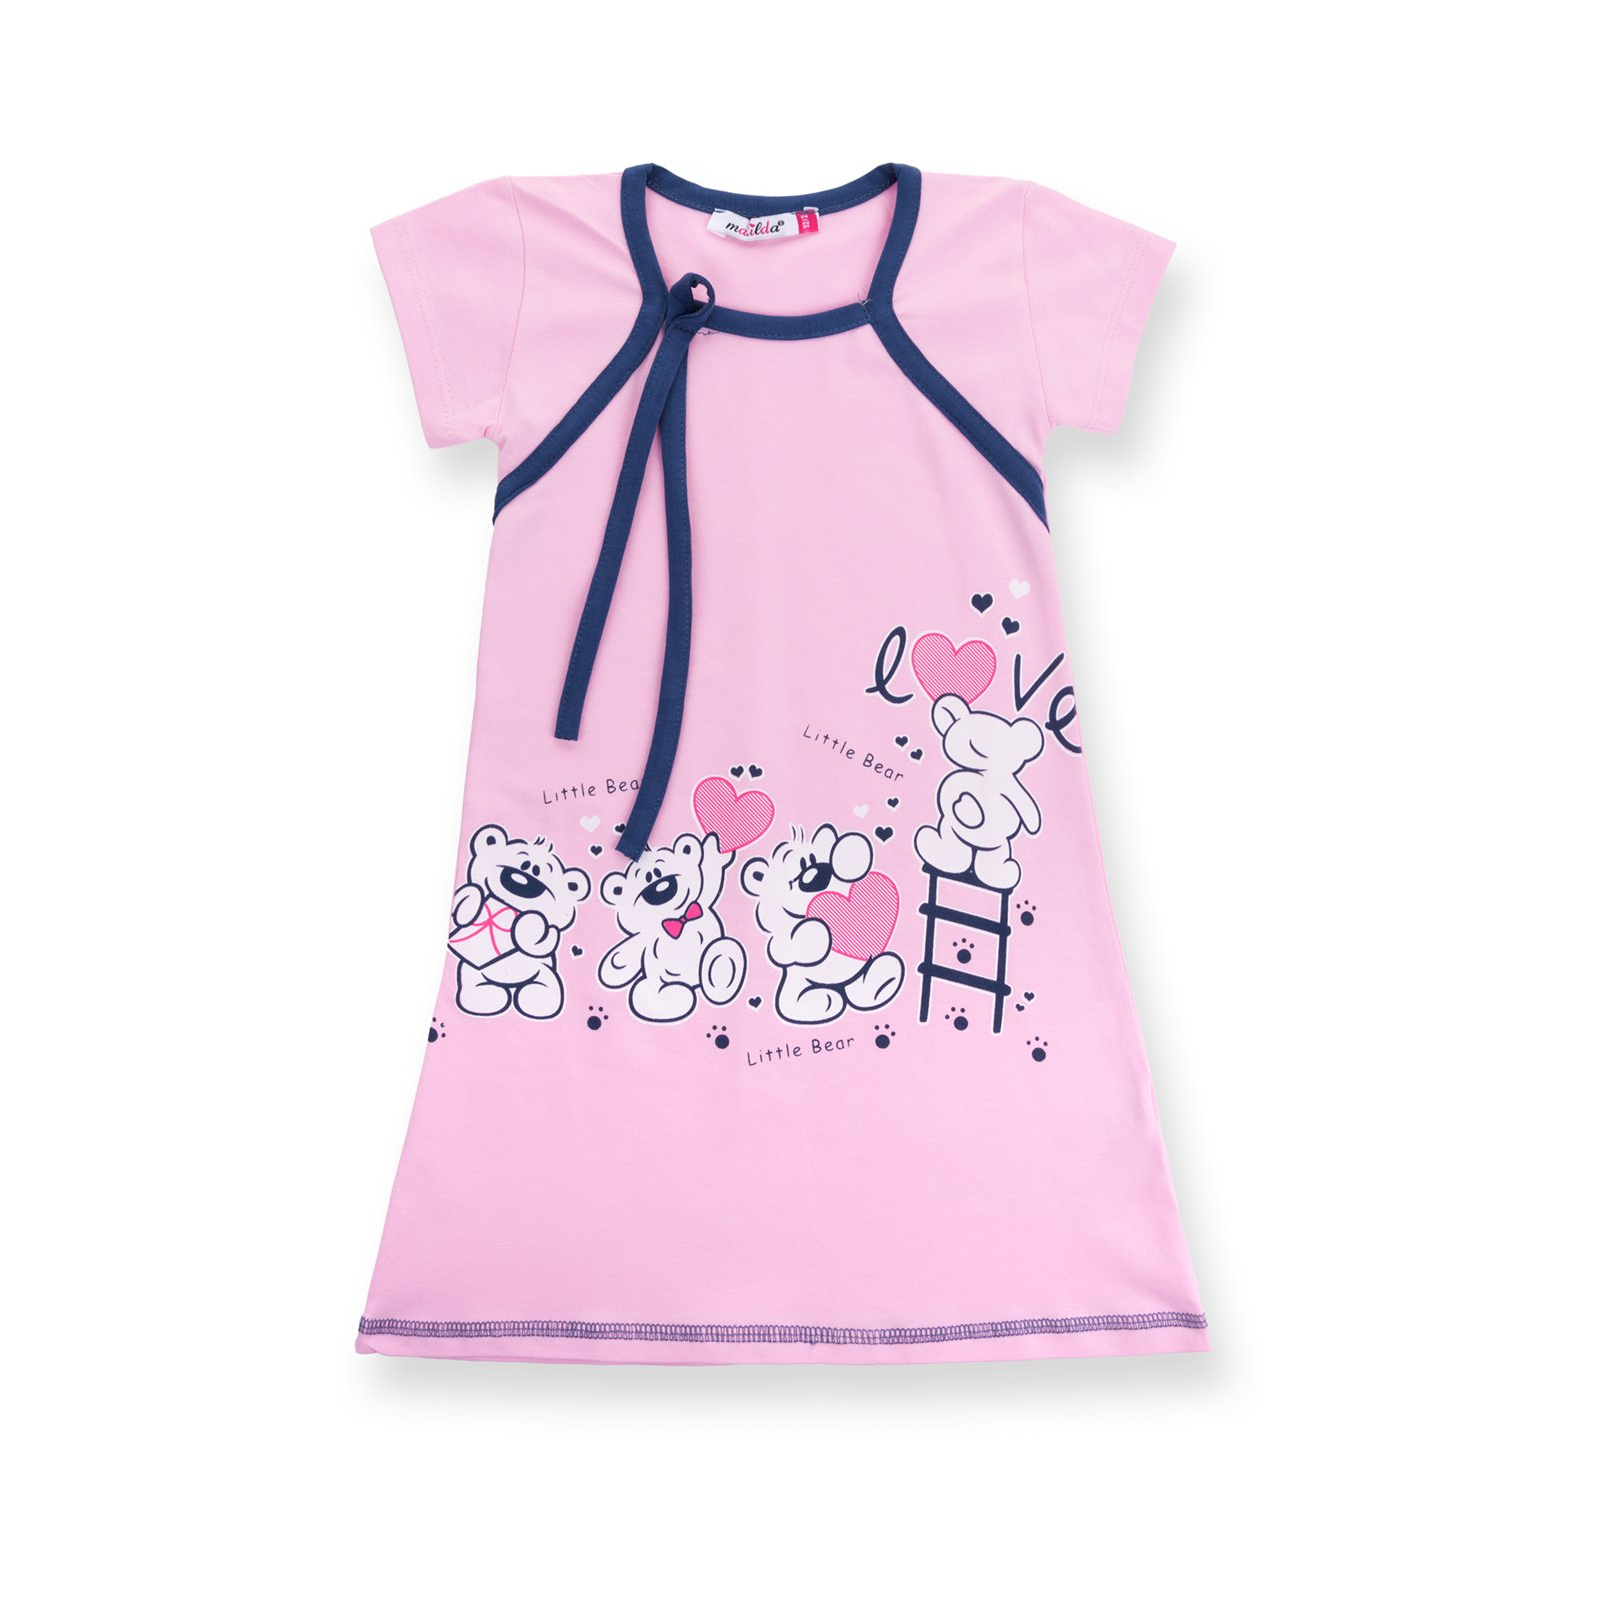 Пижама Matilda и халат с мишками "Love" (7445-134G-pink) изображение 3